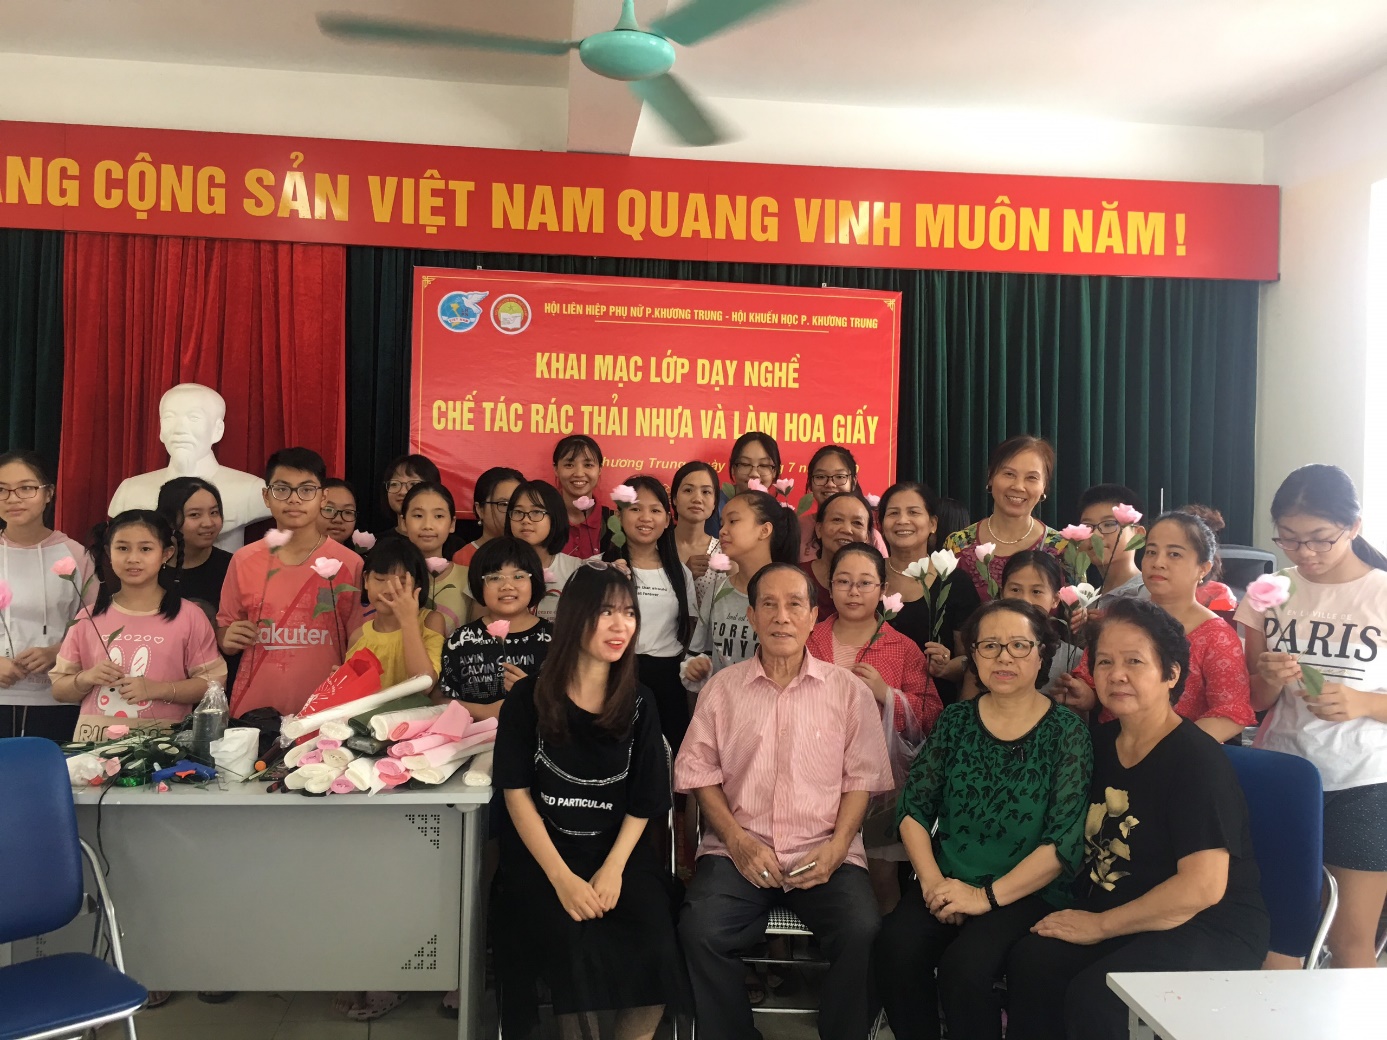 Anh Nguyễn Đình Quỳnh cùng với lớp dạy nghề cắm hoa